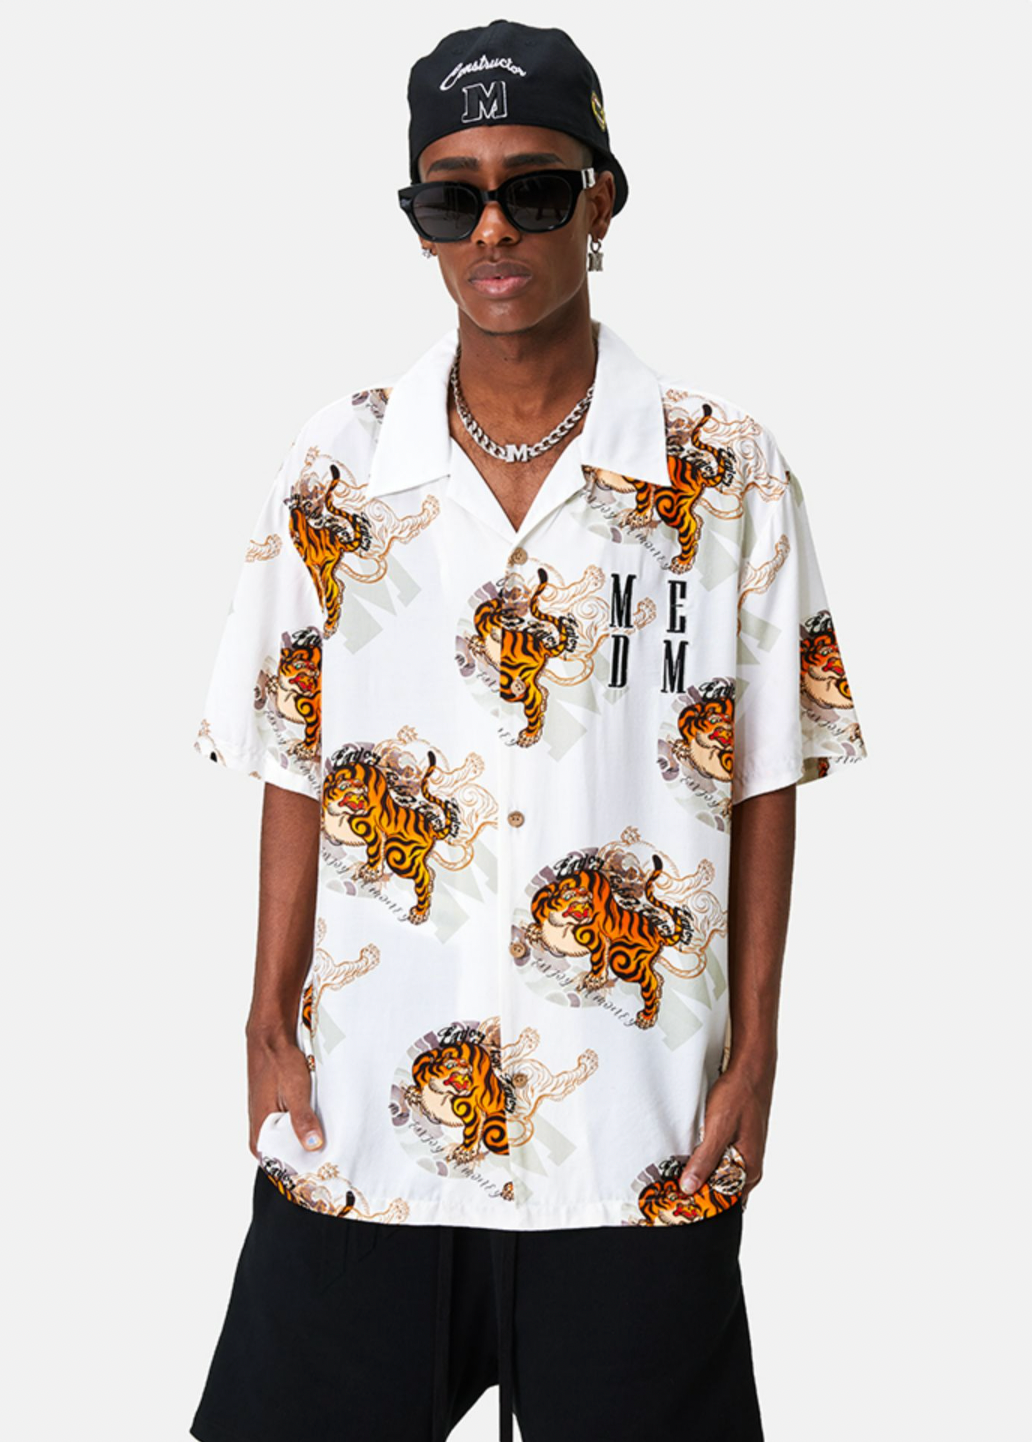 MEDM Tiger Full Printed Short Sleeved Hawaiian Shirt